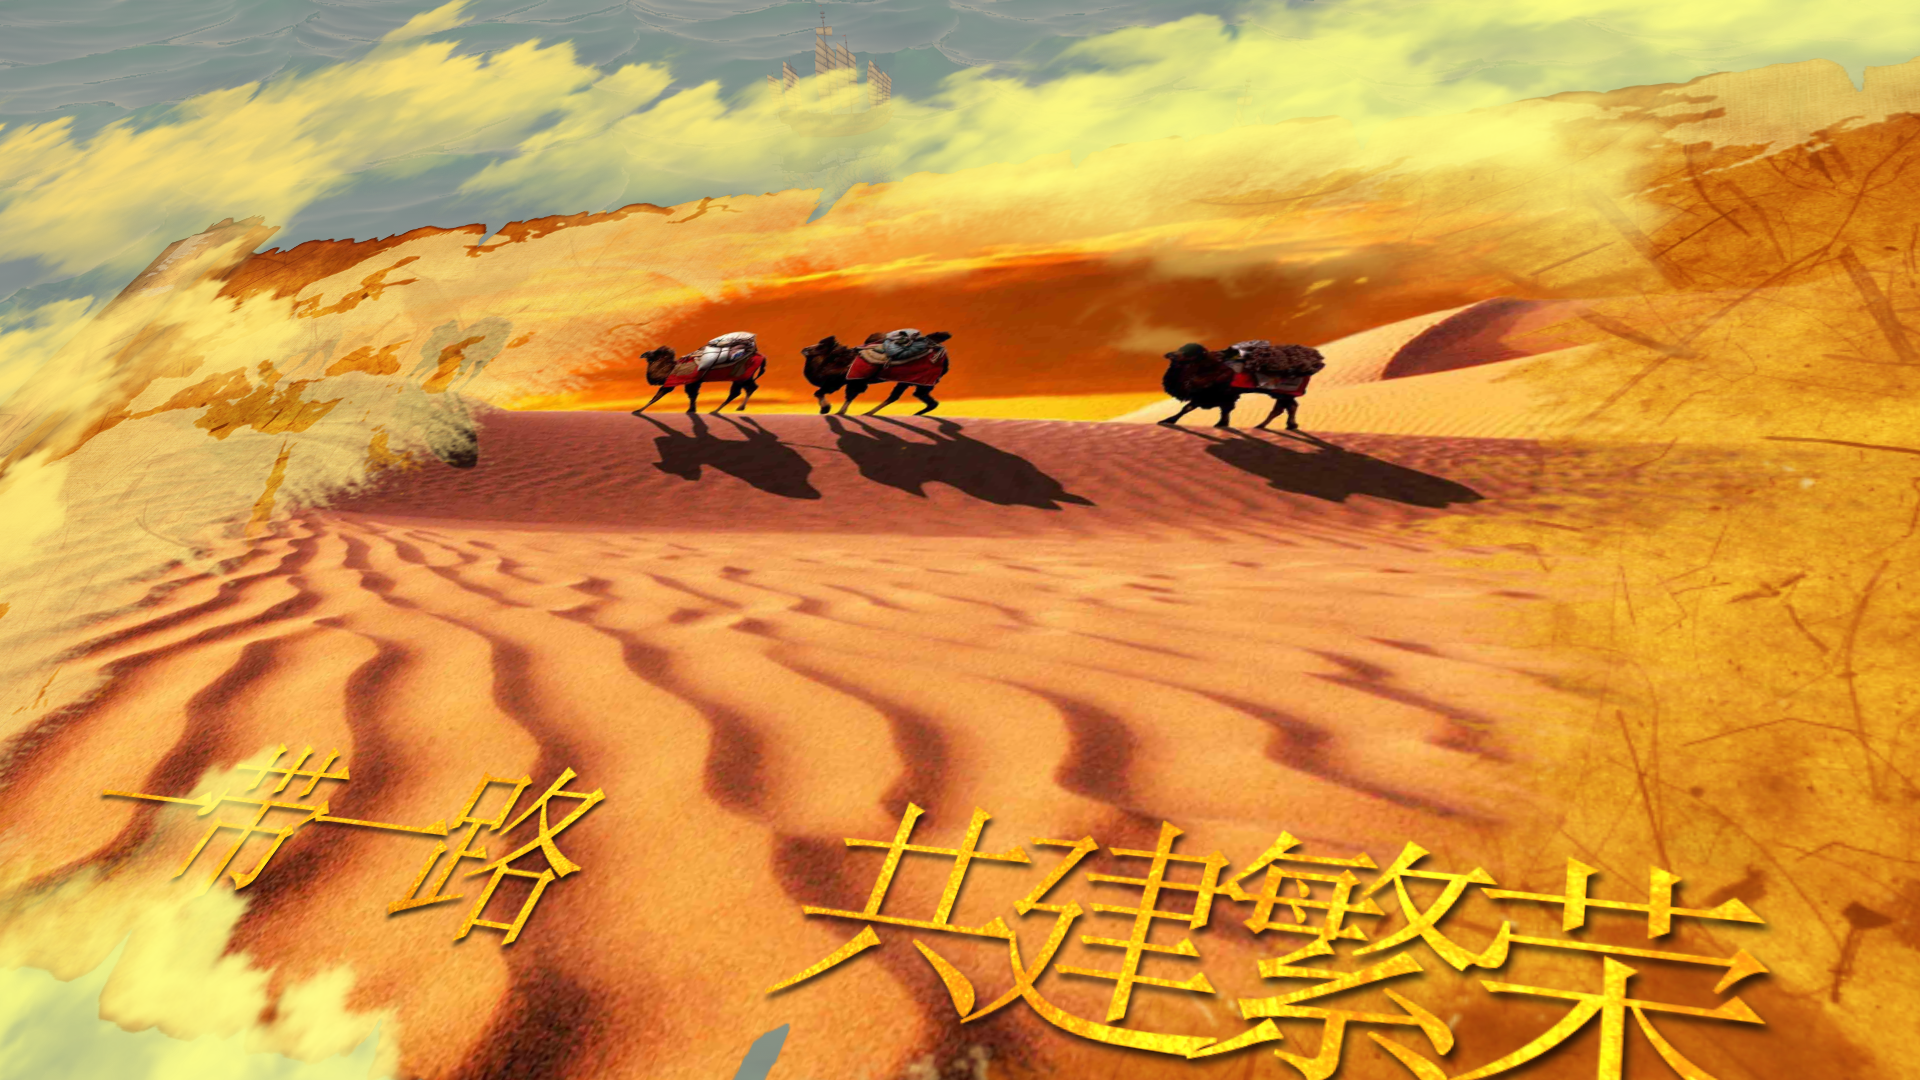 699个最佳沙漠骆驼素材作品下载合集 潮点视频